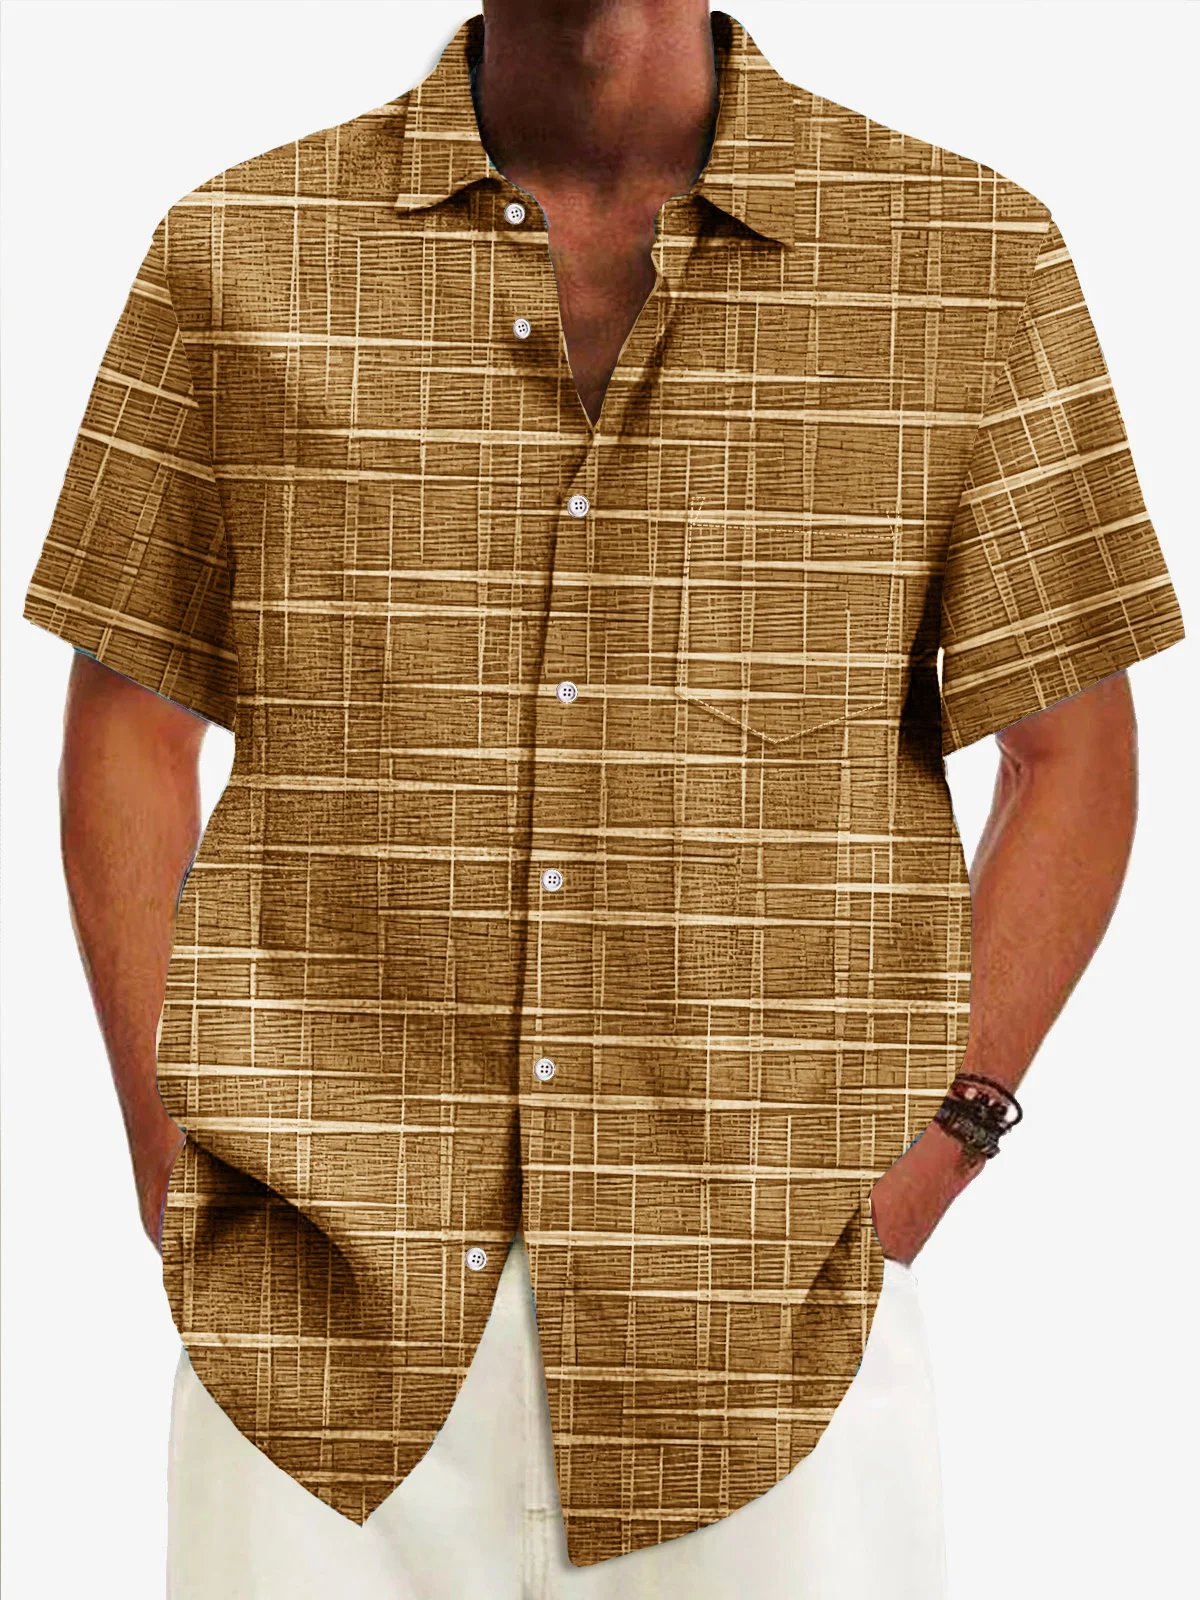 Royaura® Vintage Bamboo Jacquard Men's Casual Shirt Check Pocket Camp Shirt Big Tall